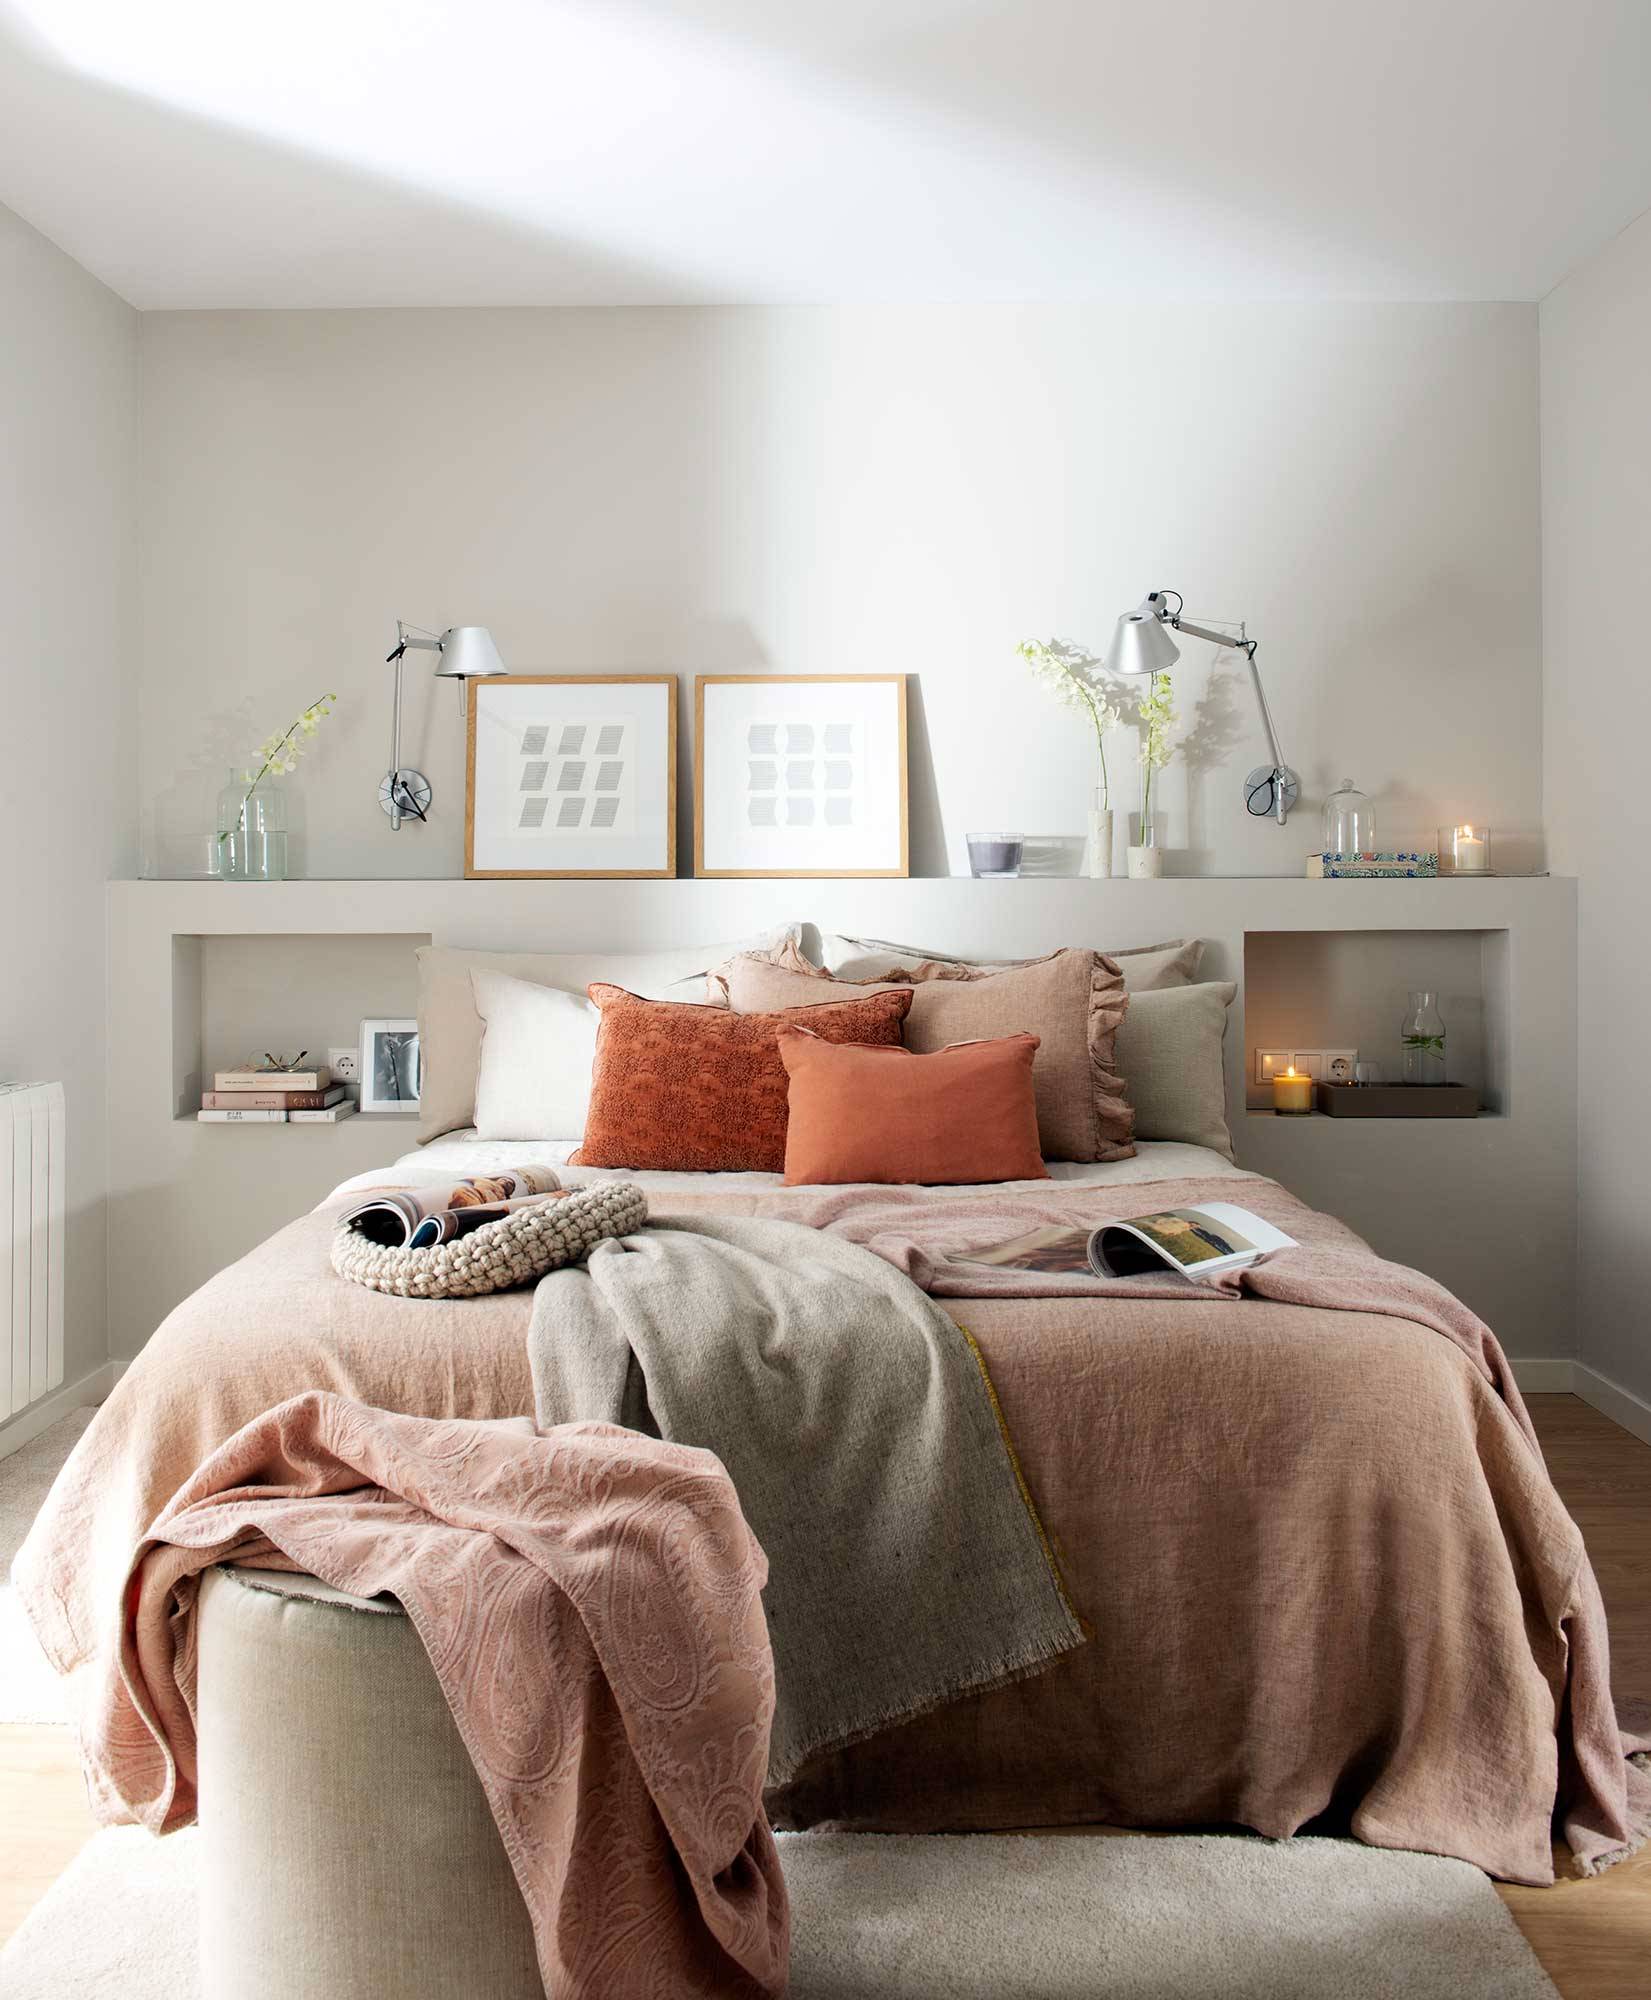 Dormitorio con cabecero de obra en blanco, mesillas integradas y ropa de cama en rosa empolvado.